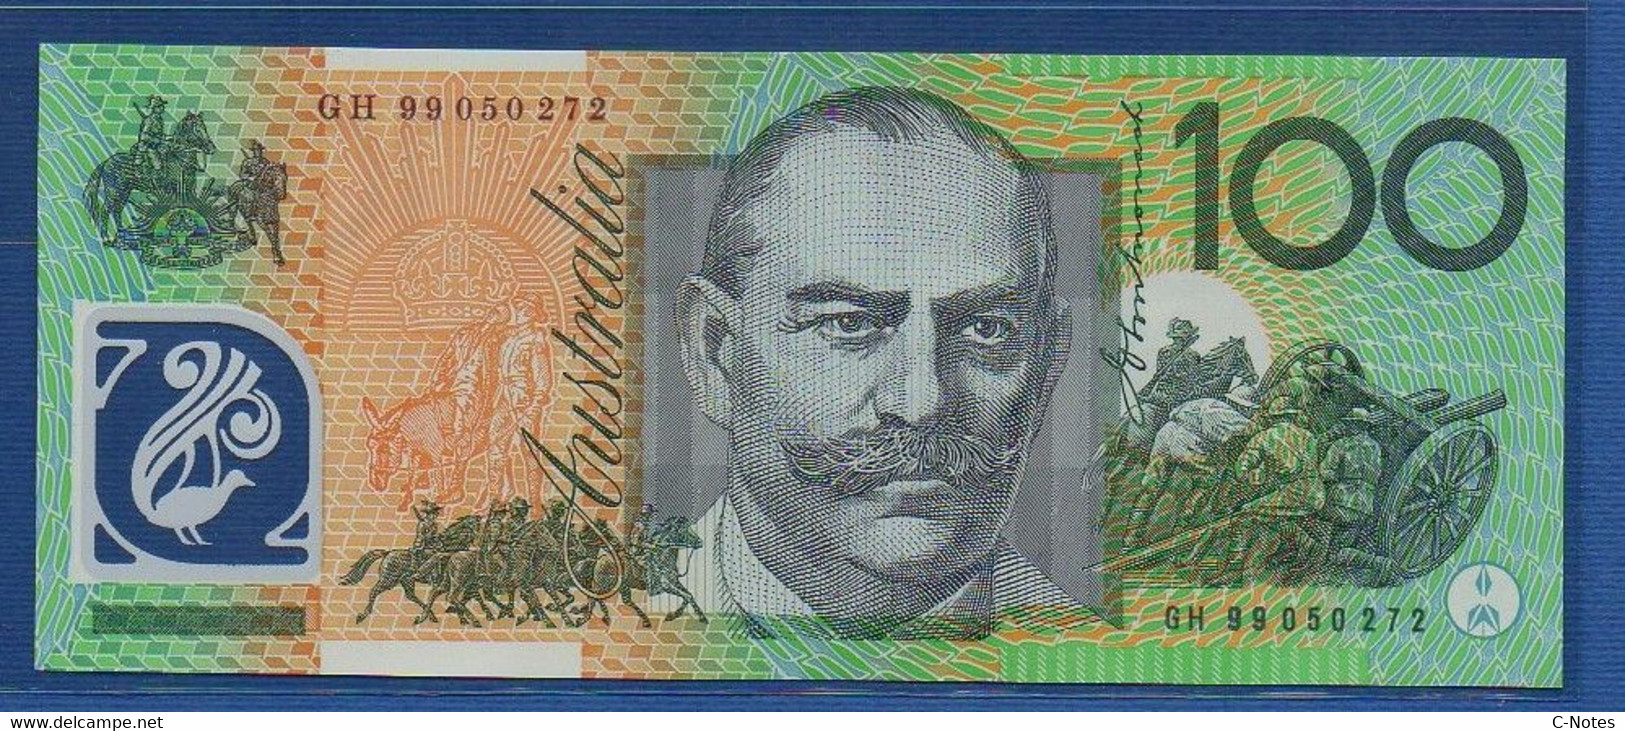 AUSTRALIA - P.55b - 100 Dollars 1999 UNC, Serie GH 99 050272 - 1992-2001 (kunststoffgeldscheine)